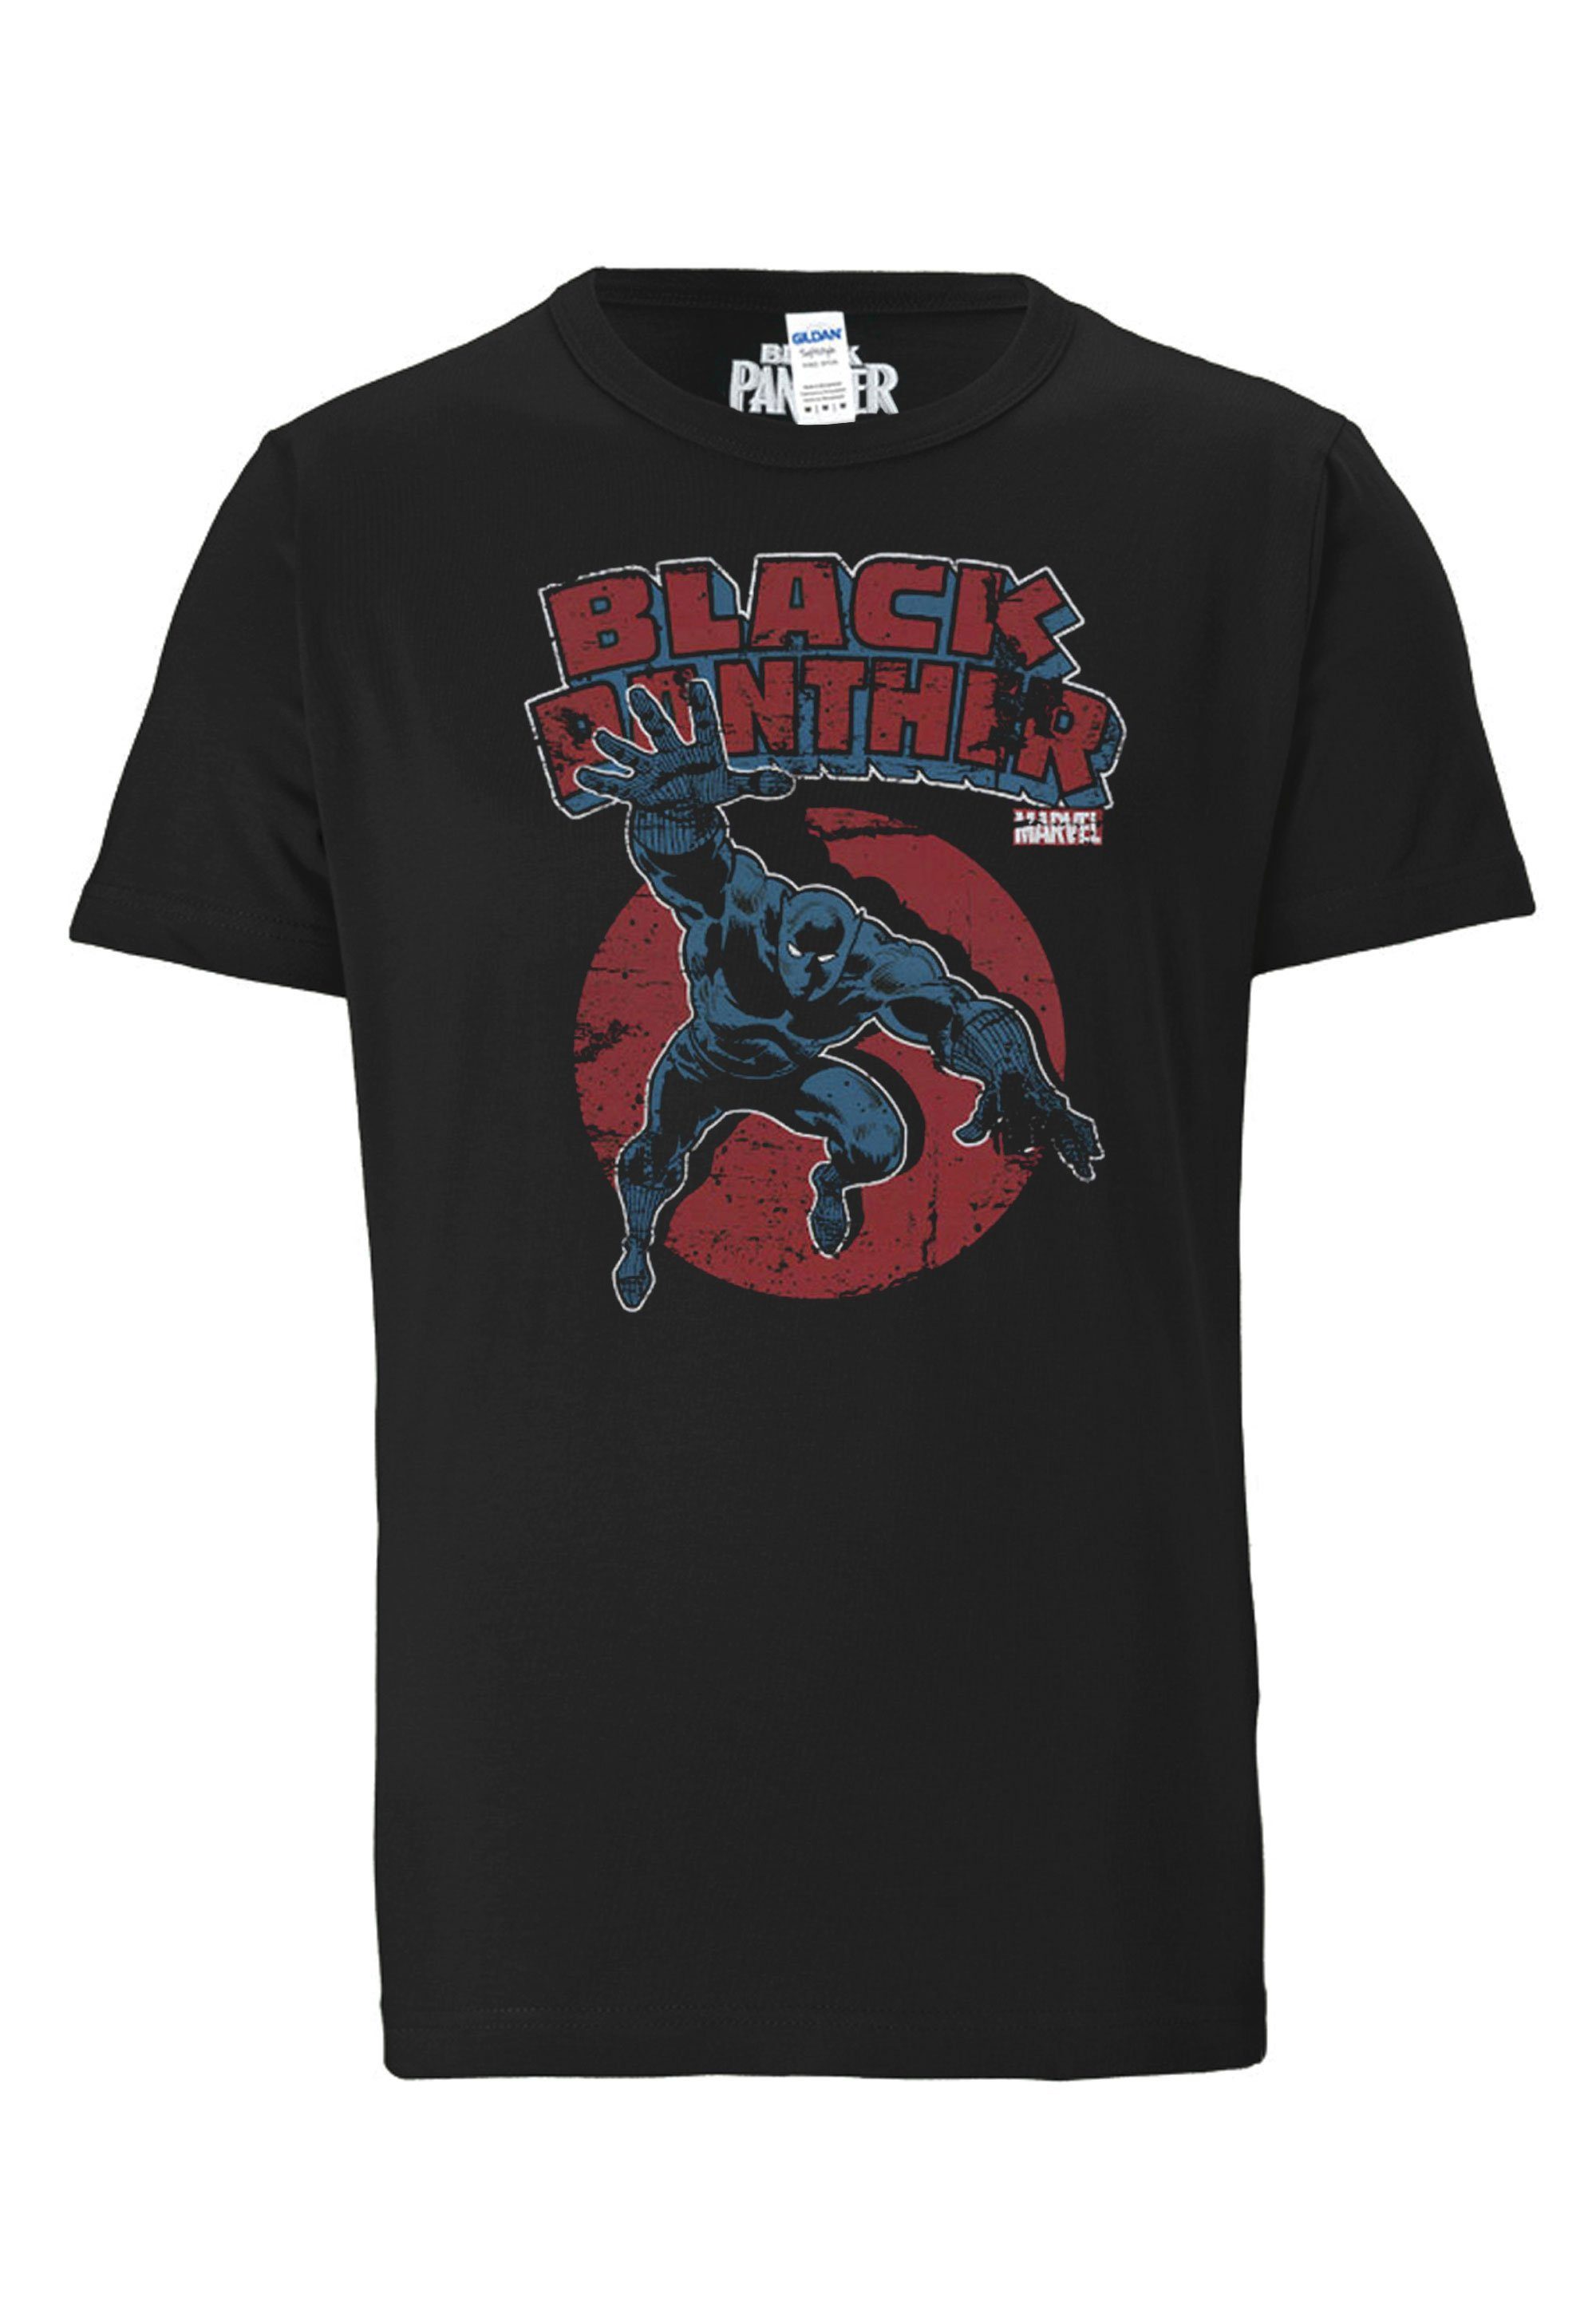 LOGOSHIRT T-Shirt Marvel - Black mit Panther Black Panther-Print